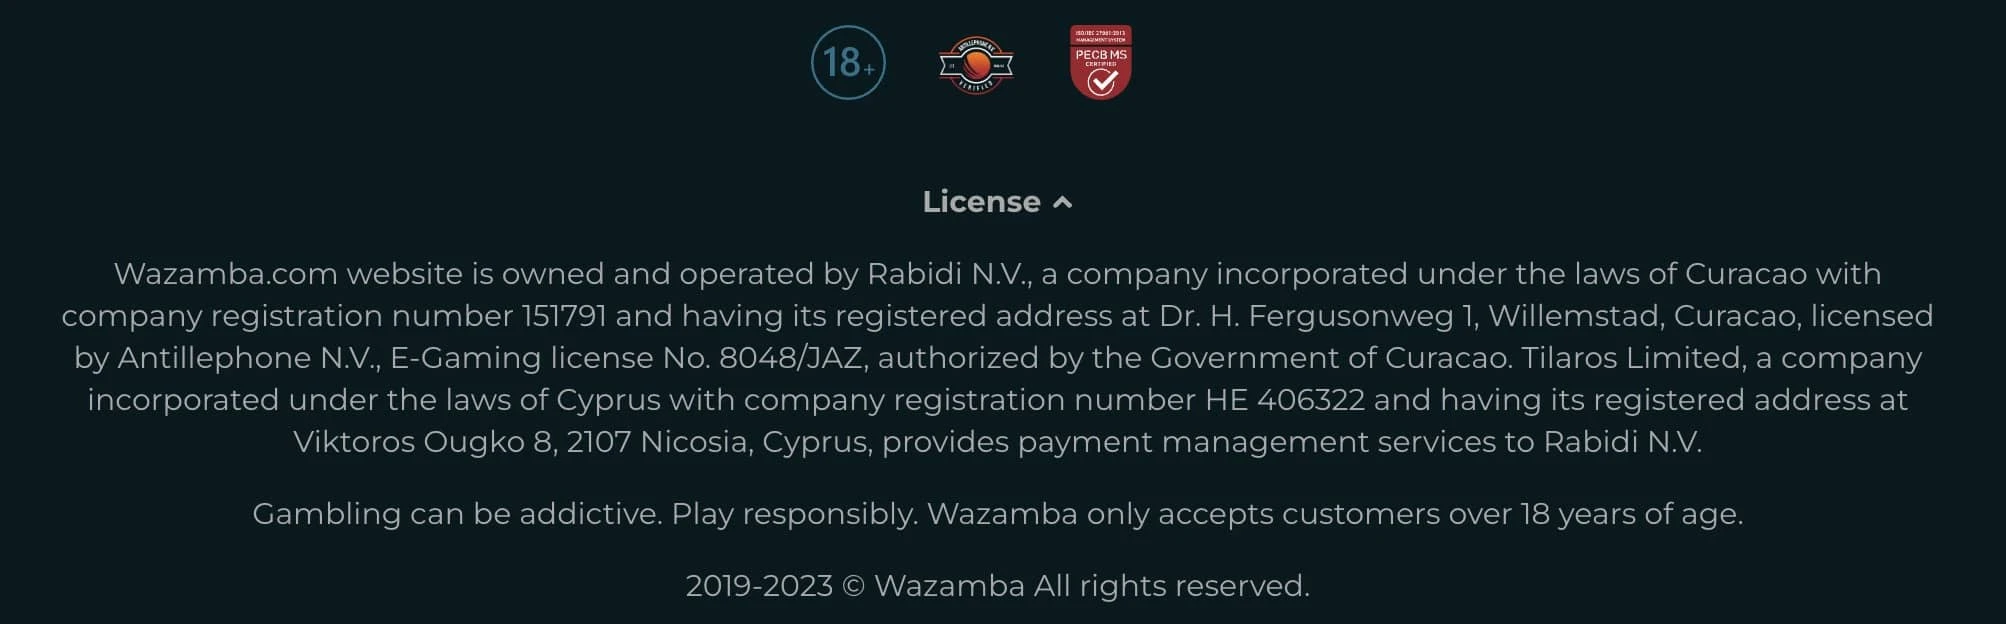 wazamba casino licence